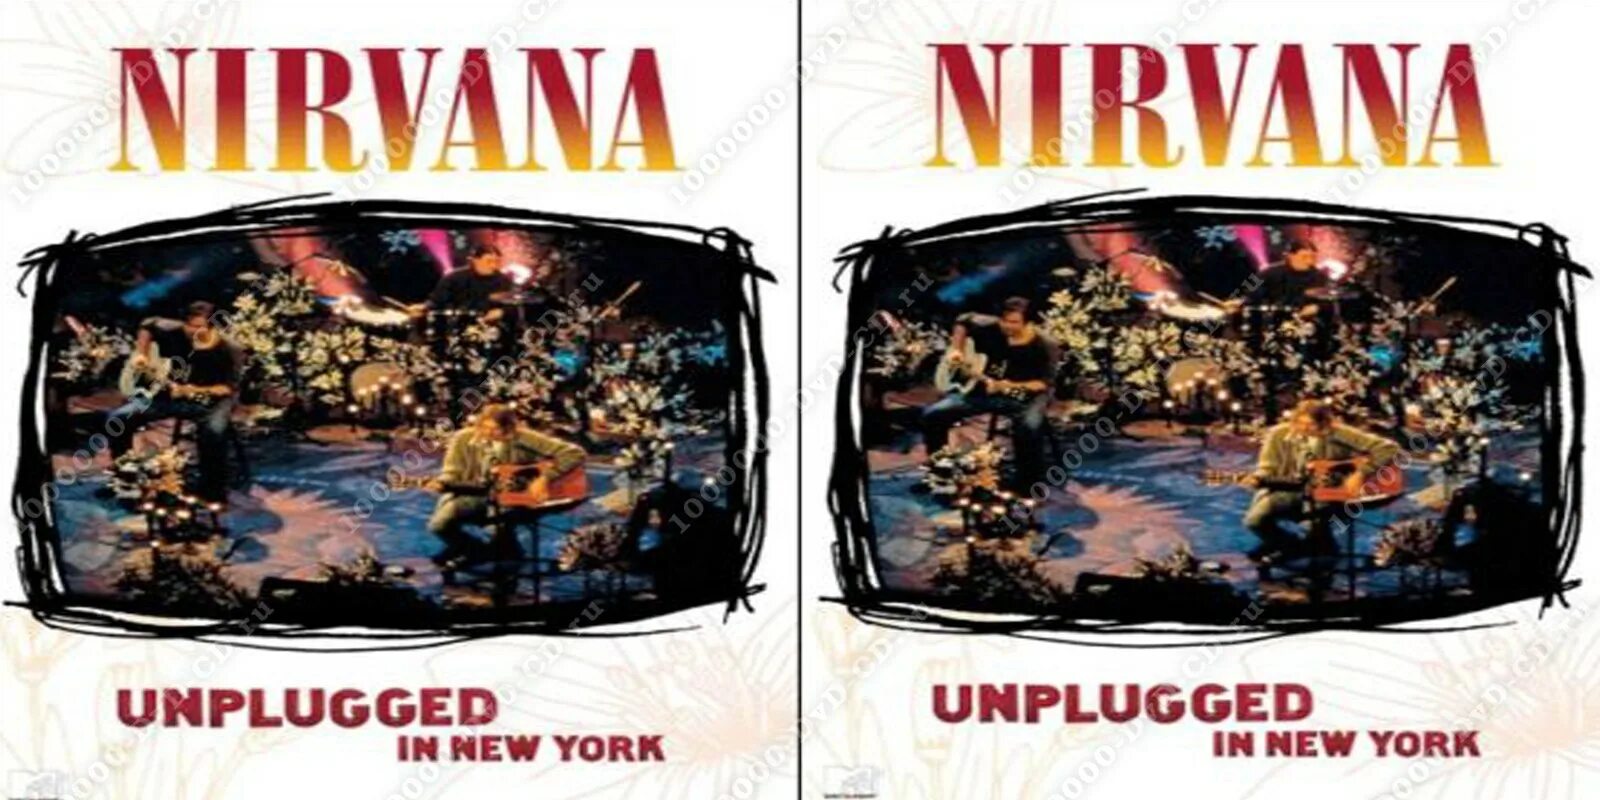 Nirvana mtv unplugged. MTV Unplugged Nirvana 1994. Nirvana Unplugged in New York 1994. Nirvana MTV Unplugged in New York обложка. DVD Nirvana - Unplugged in New York.